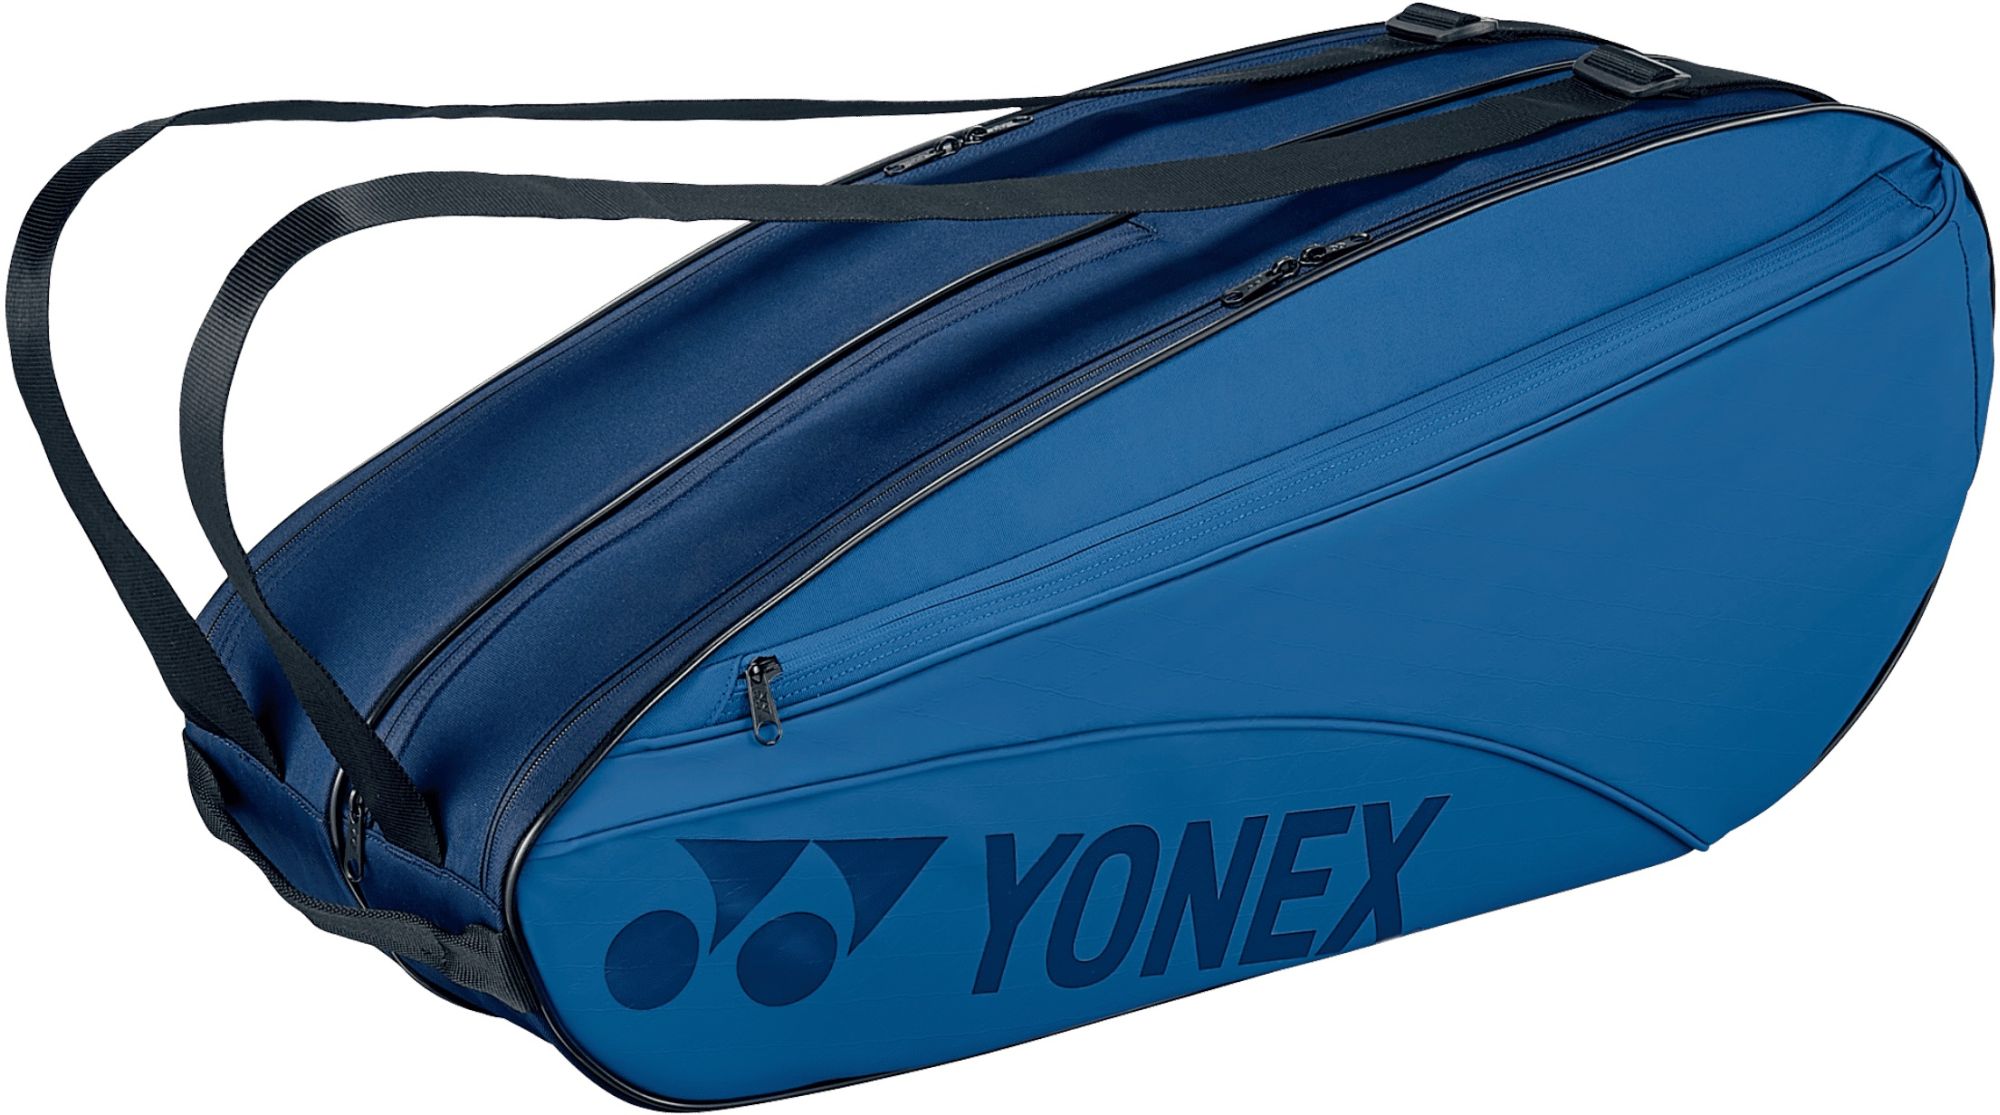 Yonex Team 6 Racquet Tennis Bag (Sky Blue)